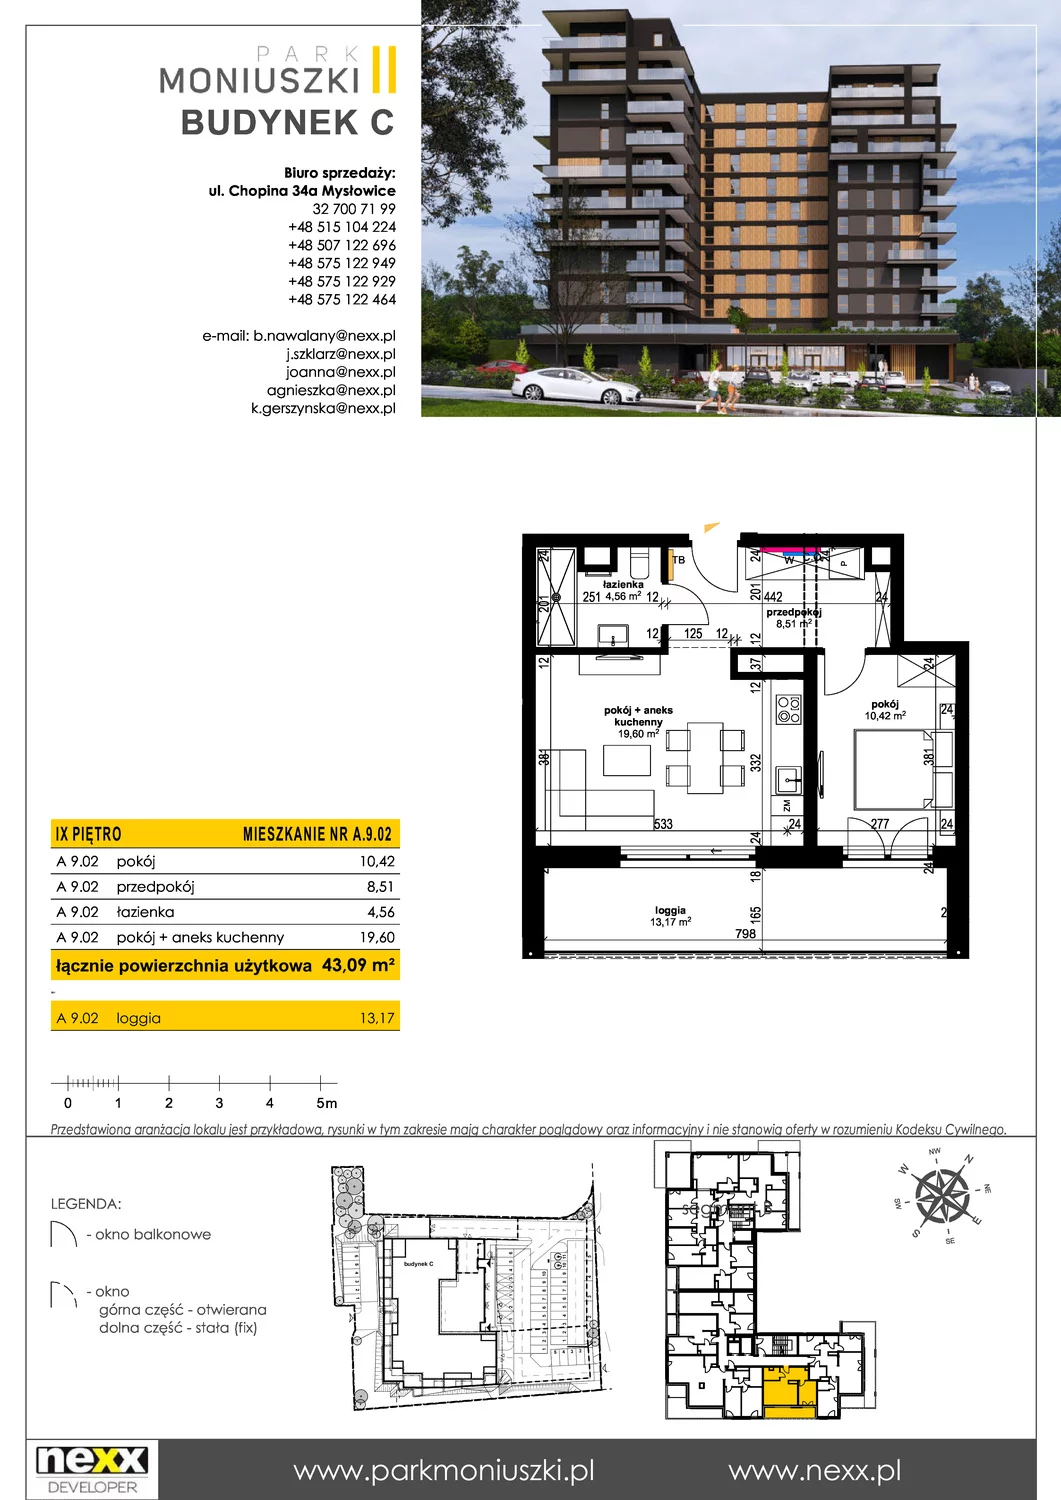 Mieszkanie 42,58 m², piętro 9, oferta nr A 9.02, Osiedle Park Moniuszki, Mysłowice, ul. Okrzei / Wielka Skotnica